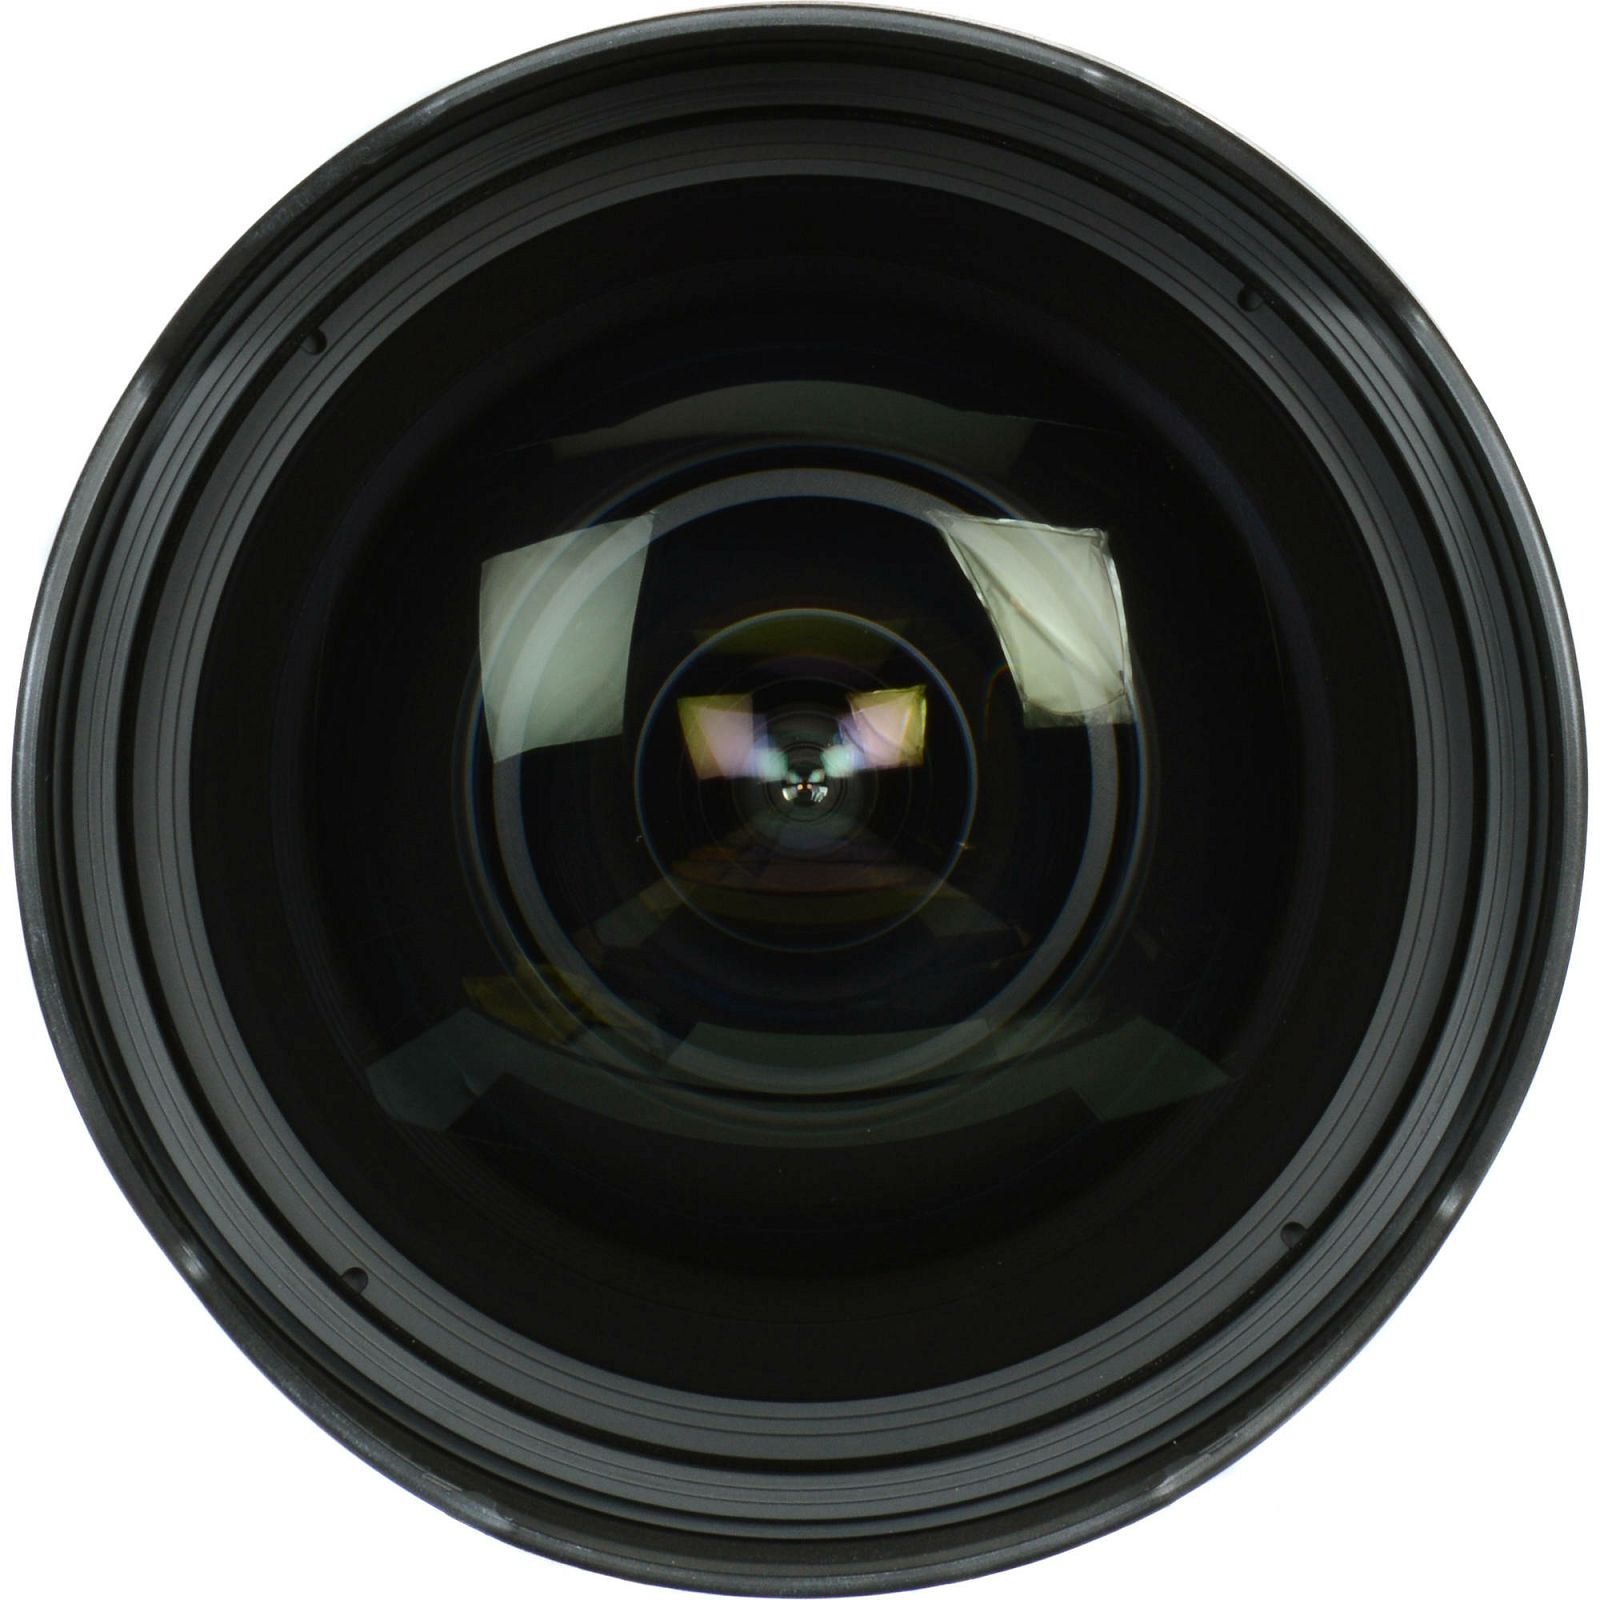 Canon EF 11-24mm f/4 L USM ultra širokokutni objektiv zoom lens 11-24 F4.0 L f/4L F4 (9520B005AA)